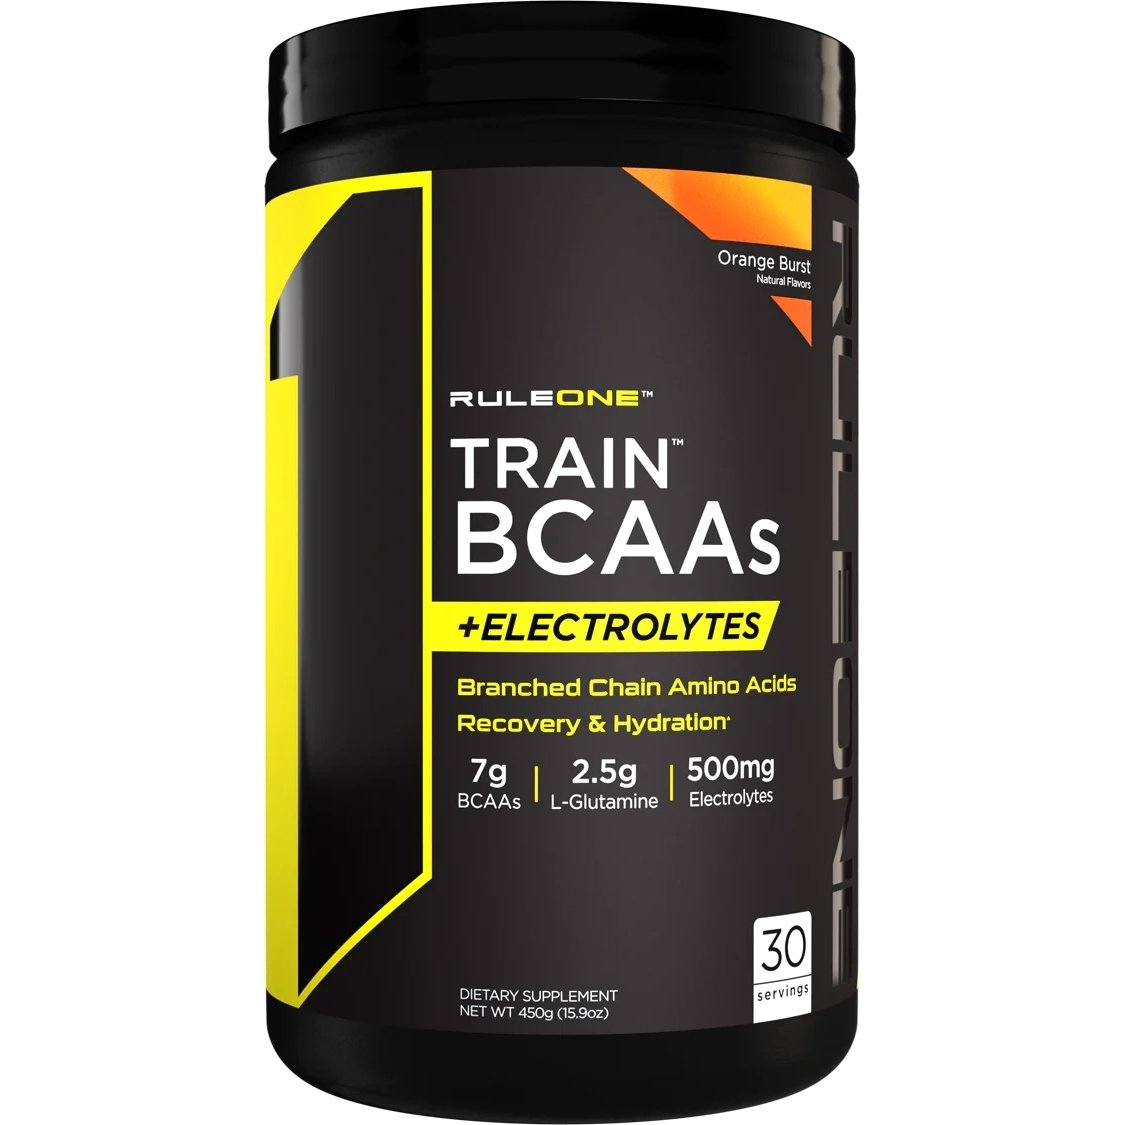 Аминокислота BCAA Rule 1 Train BCAAs + Electrolytes, 450 грамм Апельсин,  ml, Rule One Proteins. BCAA. Weight Loss recovery Anti-catabolic properties Lean muscle mass 